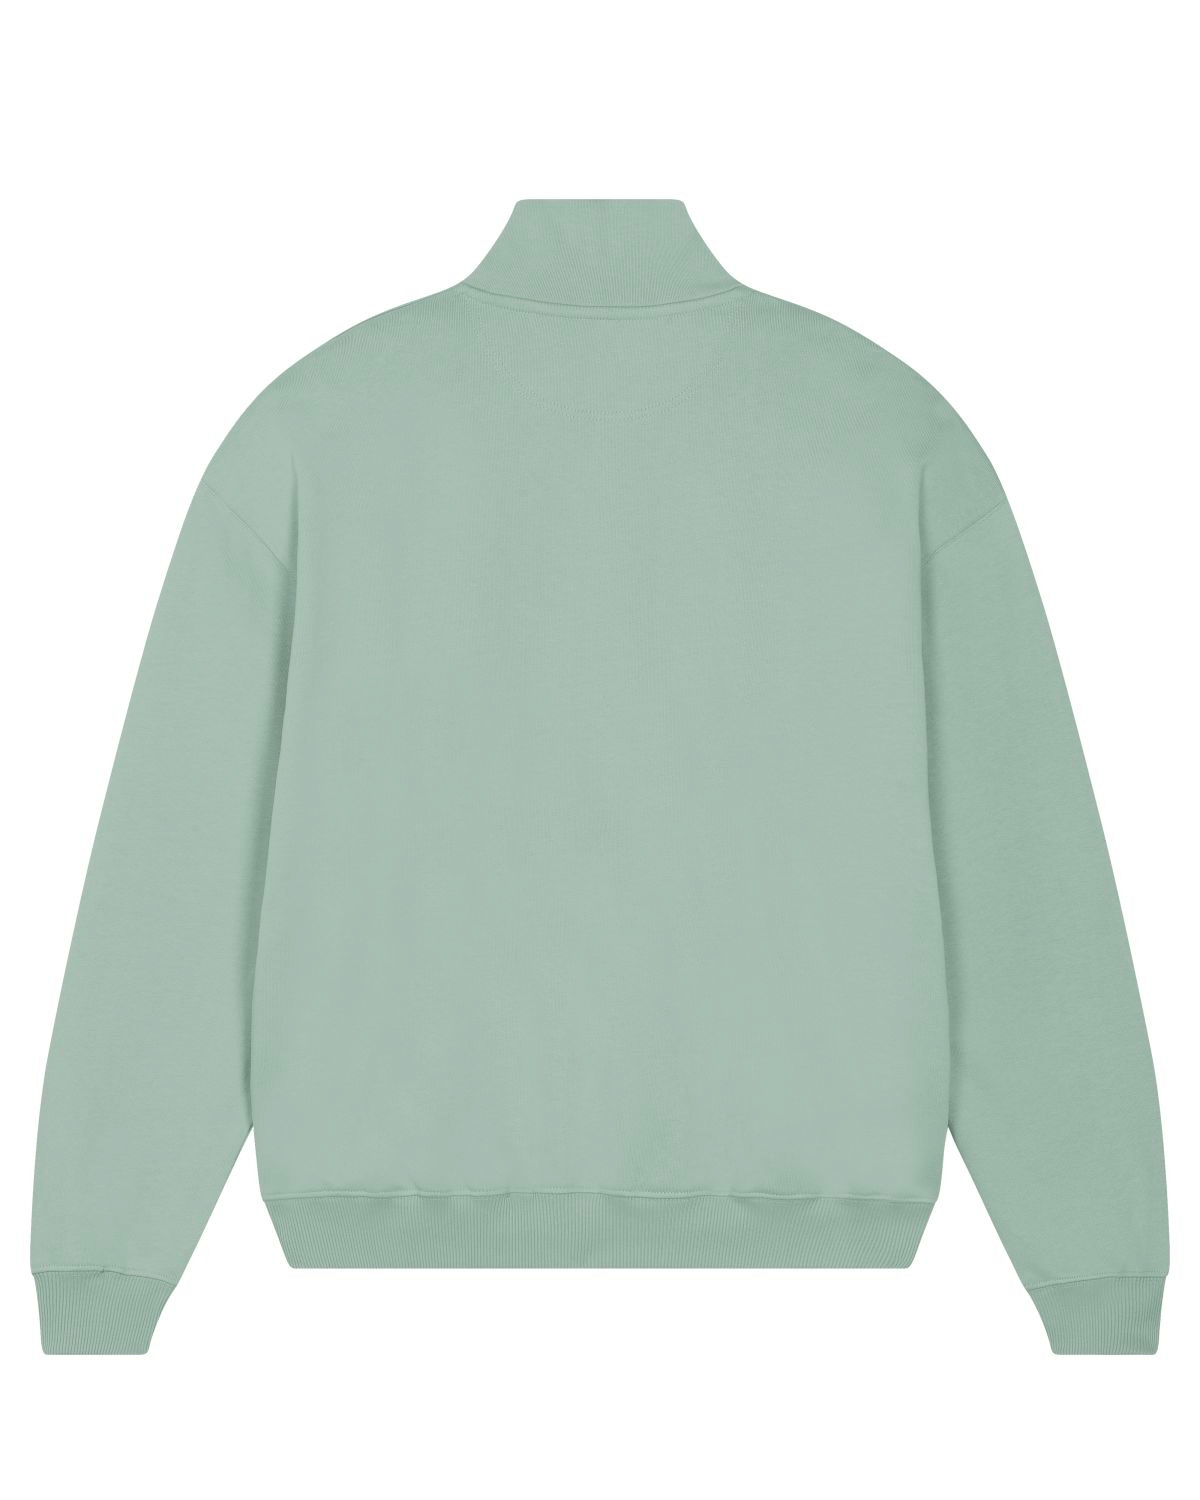 Half-Zip Sweater "Mint"